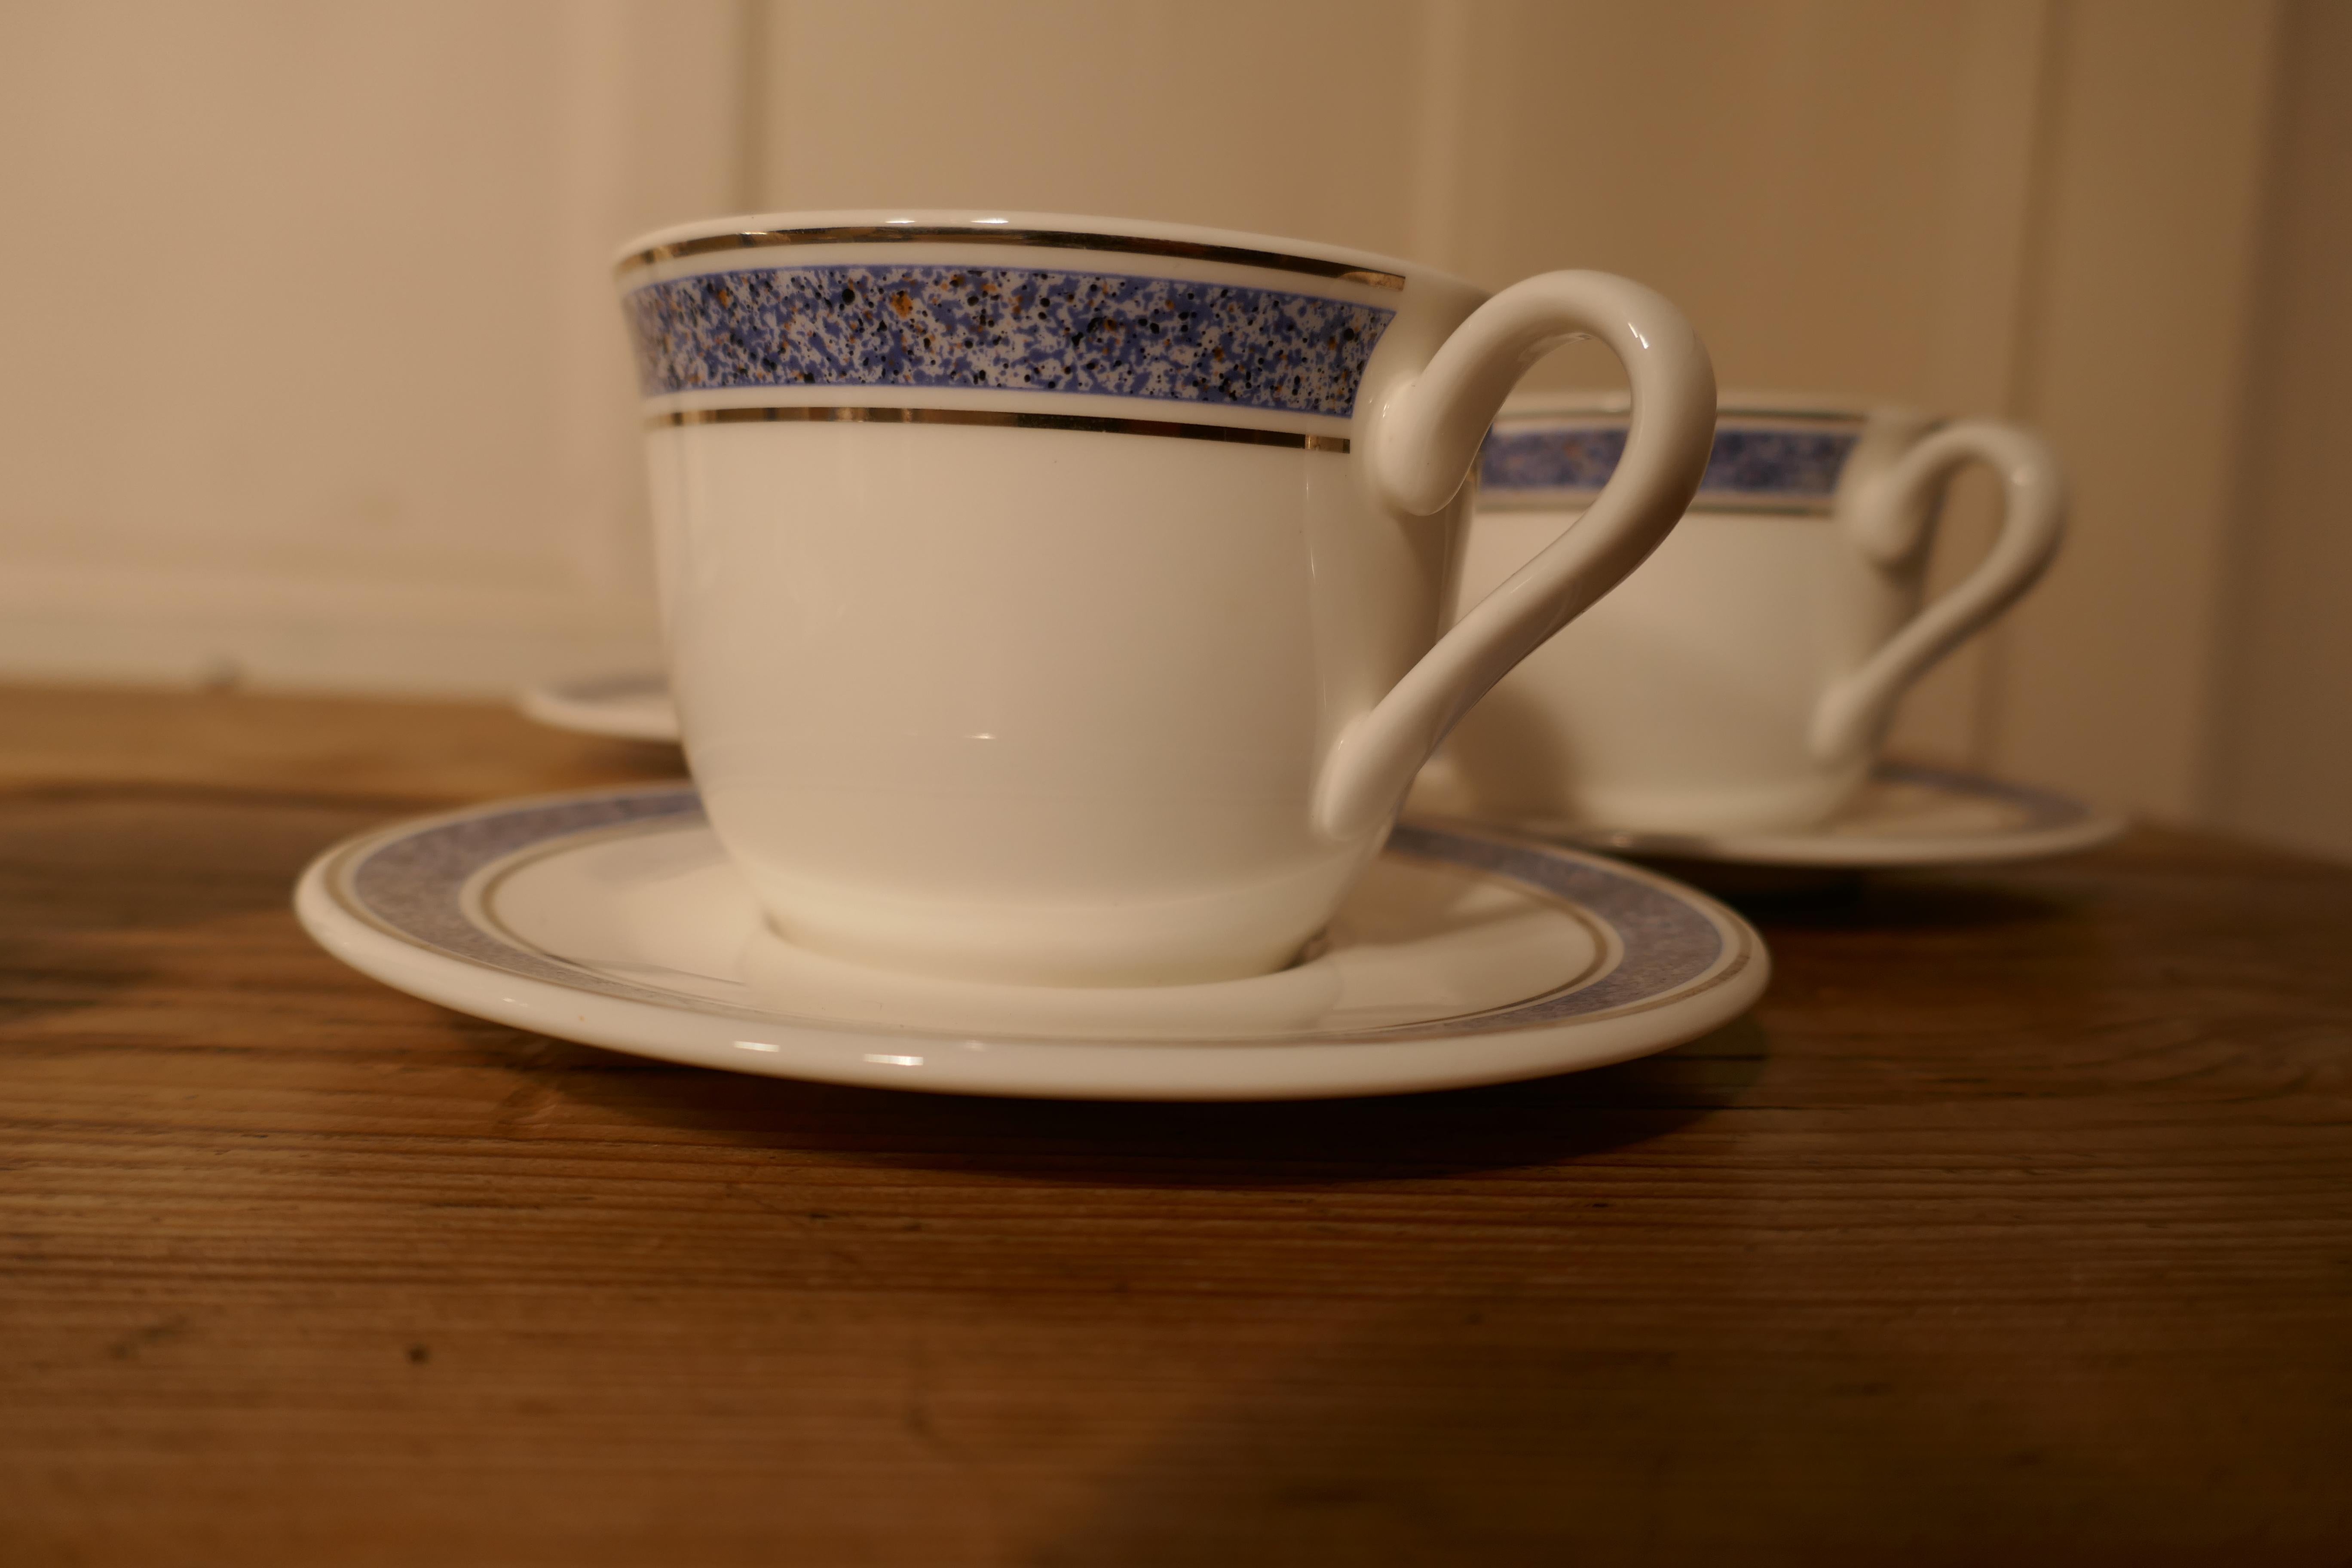 british airways teacups